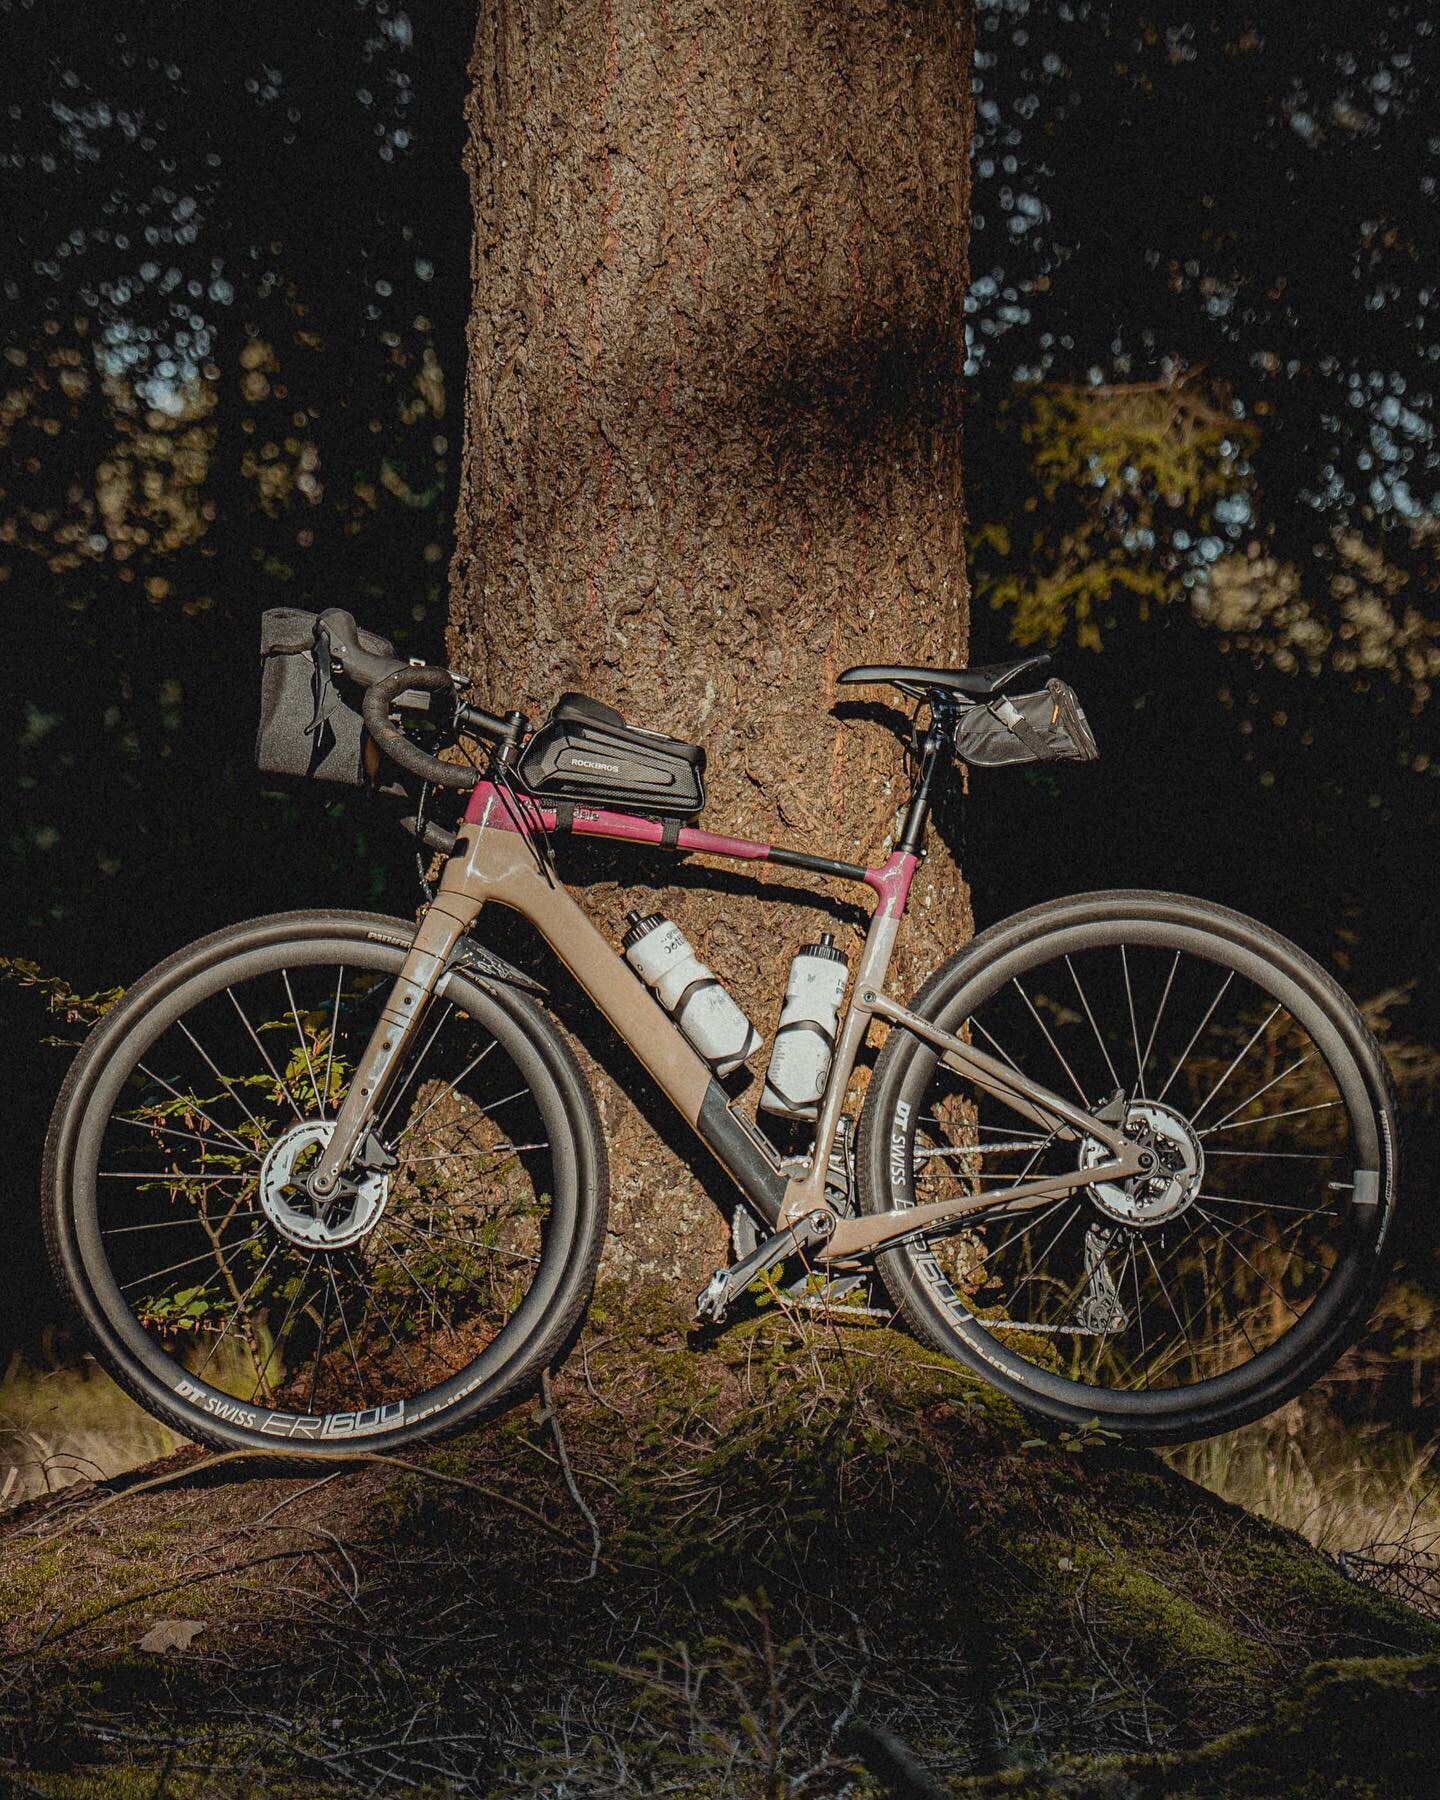 De fiets teug&rsquo;n de boom an&hellip;

#cannondale #mustgetoutdoors #bikingadventures #gasselterveld #drenthe #gravelride #productphotography #exploremore #cyclelife #bikeride #igtraveler